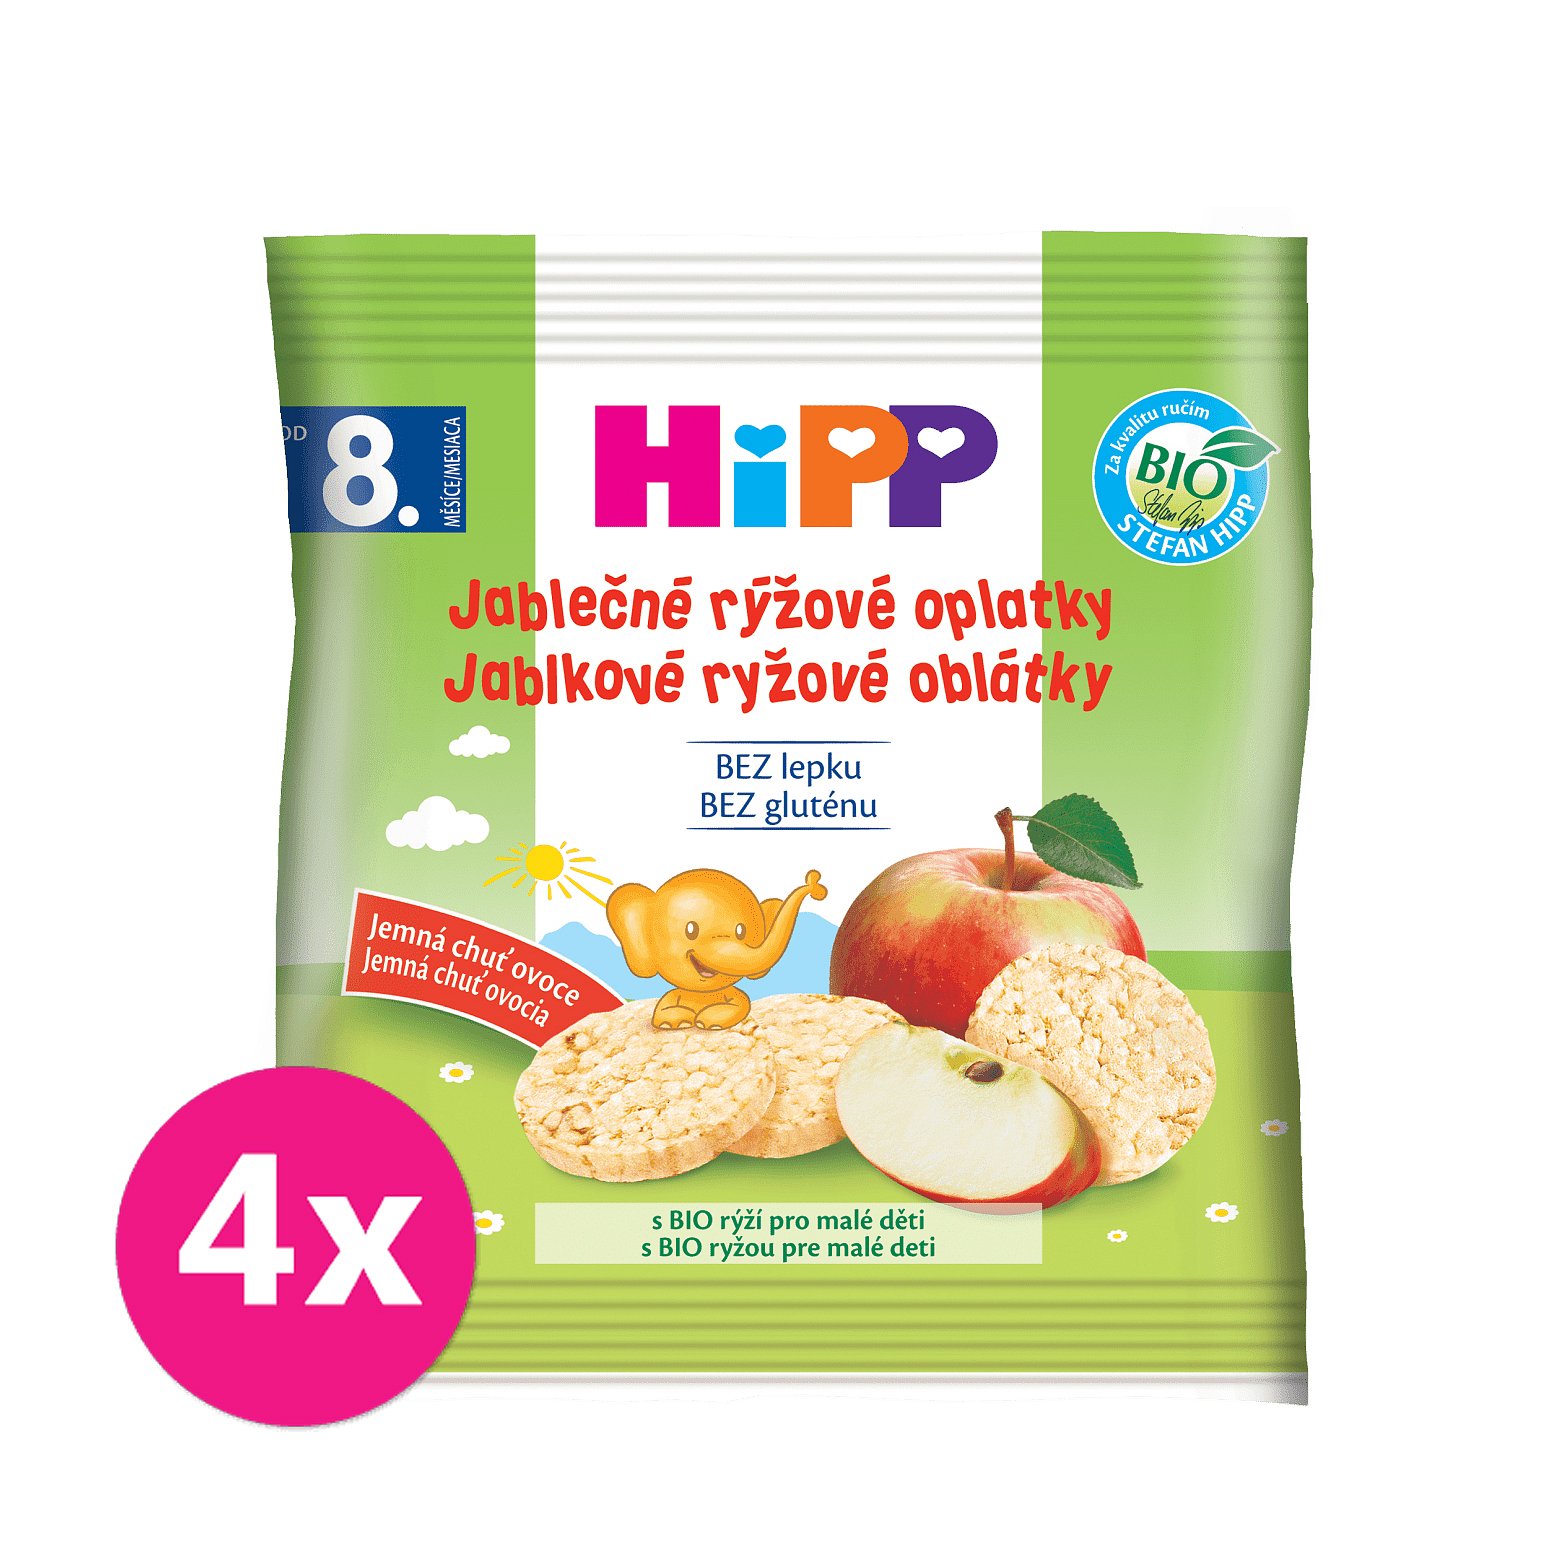 4x HIPP BIO Oplatky dětské rýžové jablkové 30g